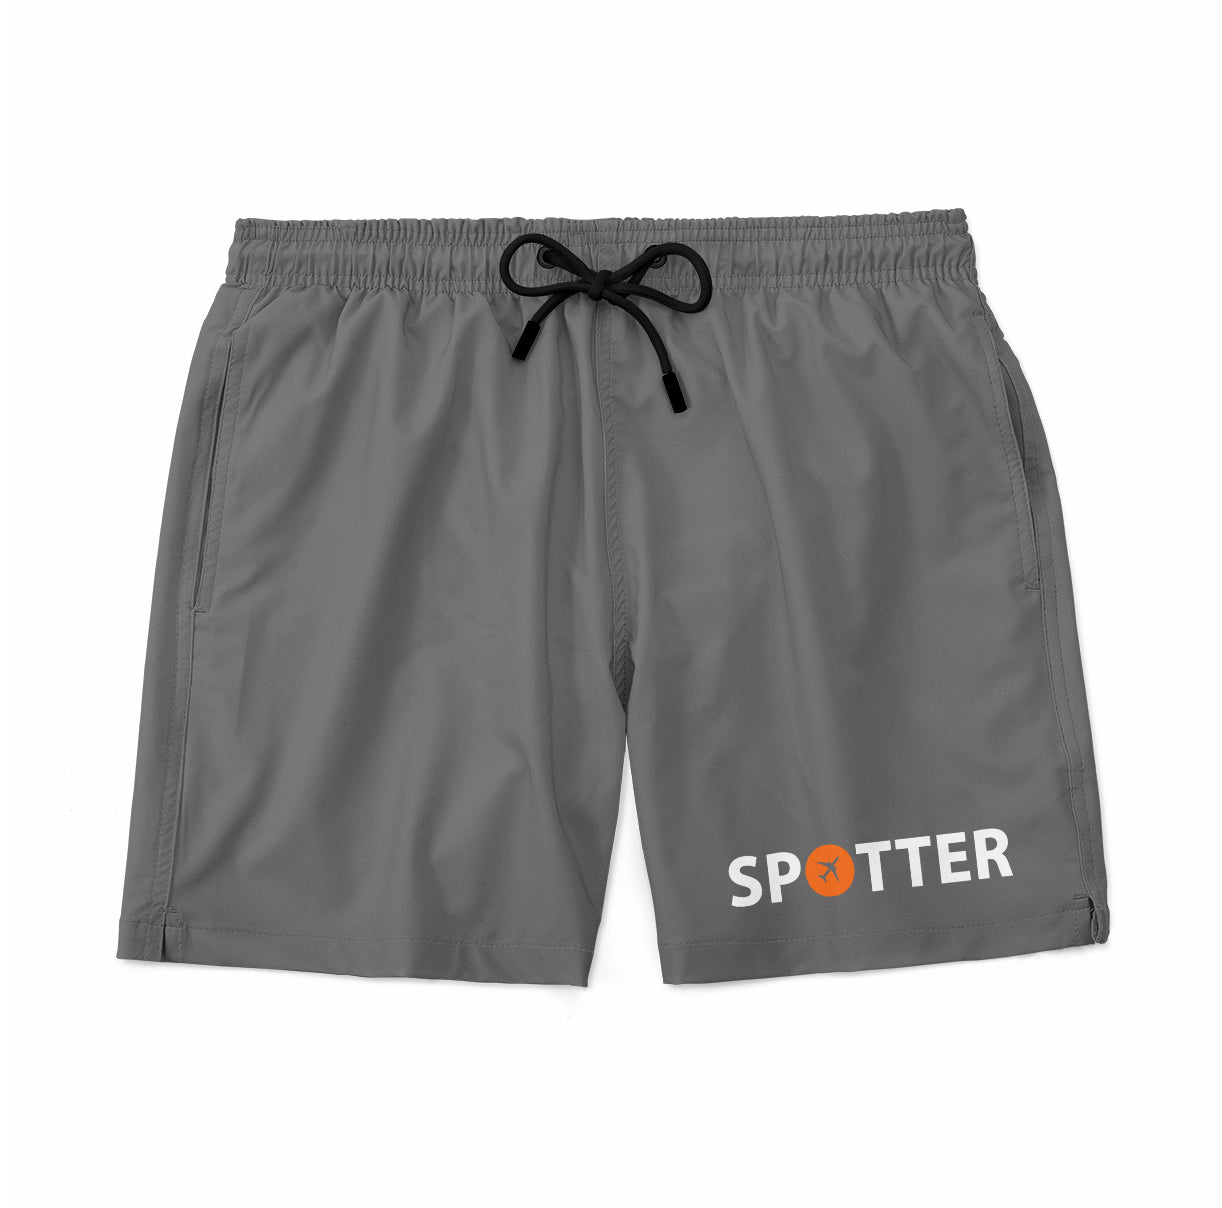 Spotter Designed Swim Trunks & Shorts